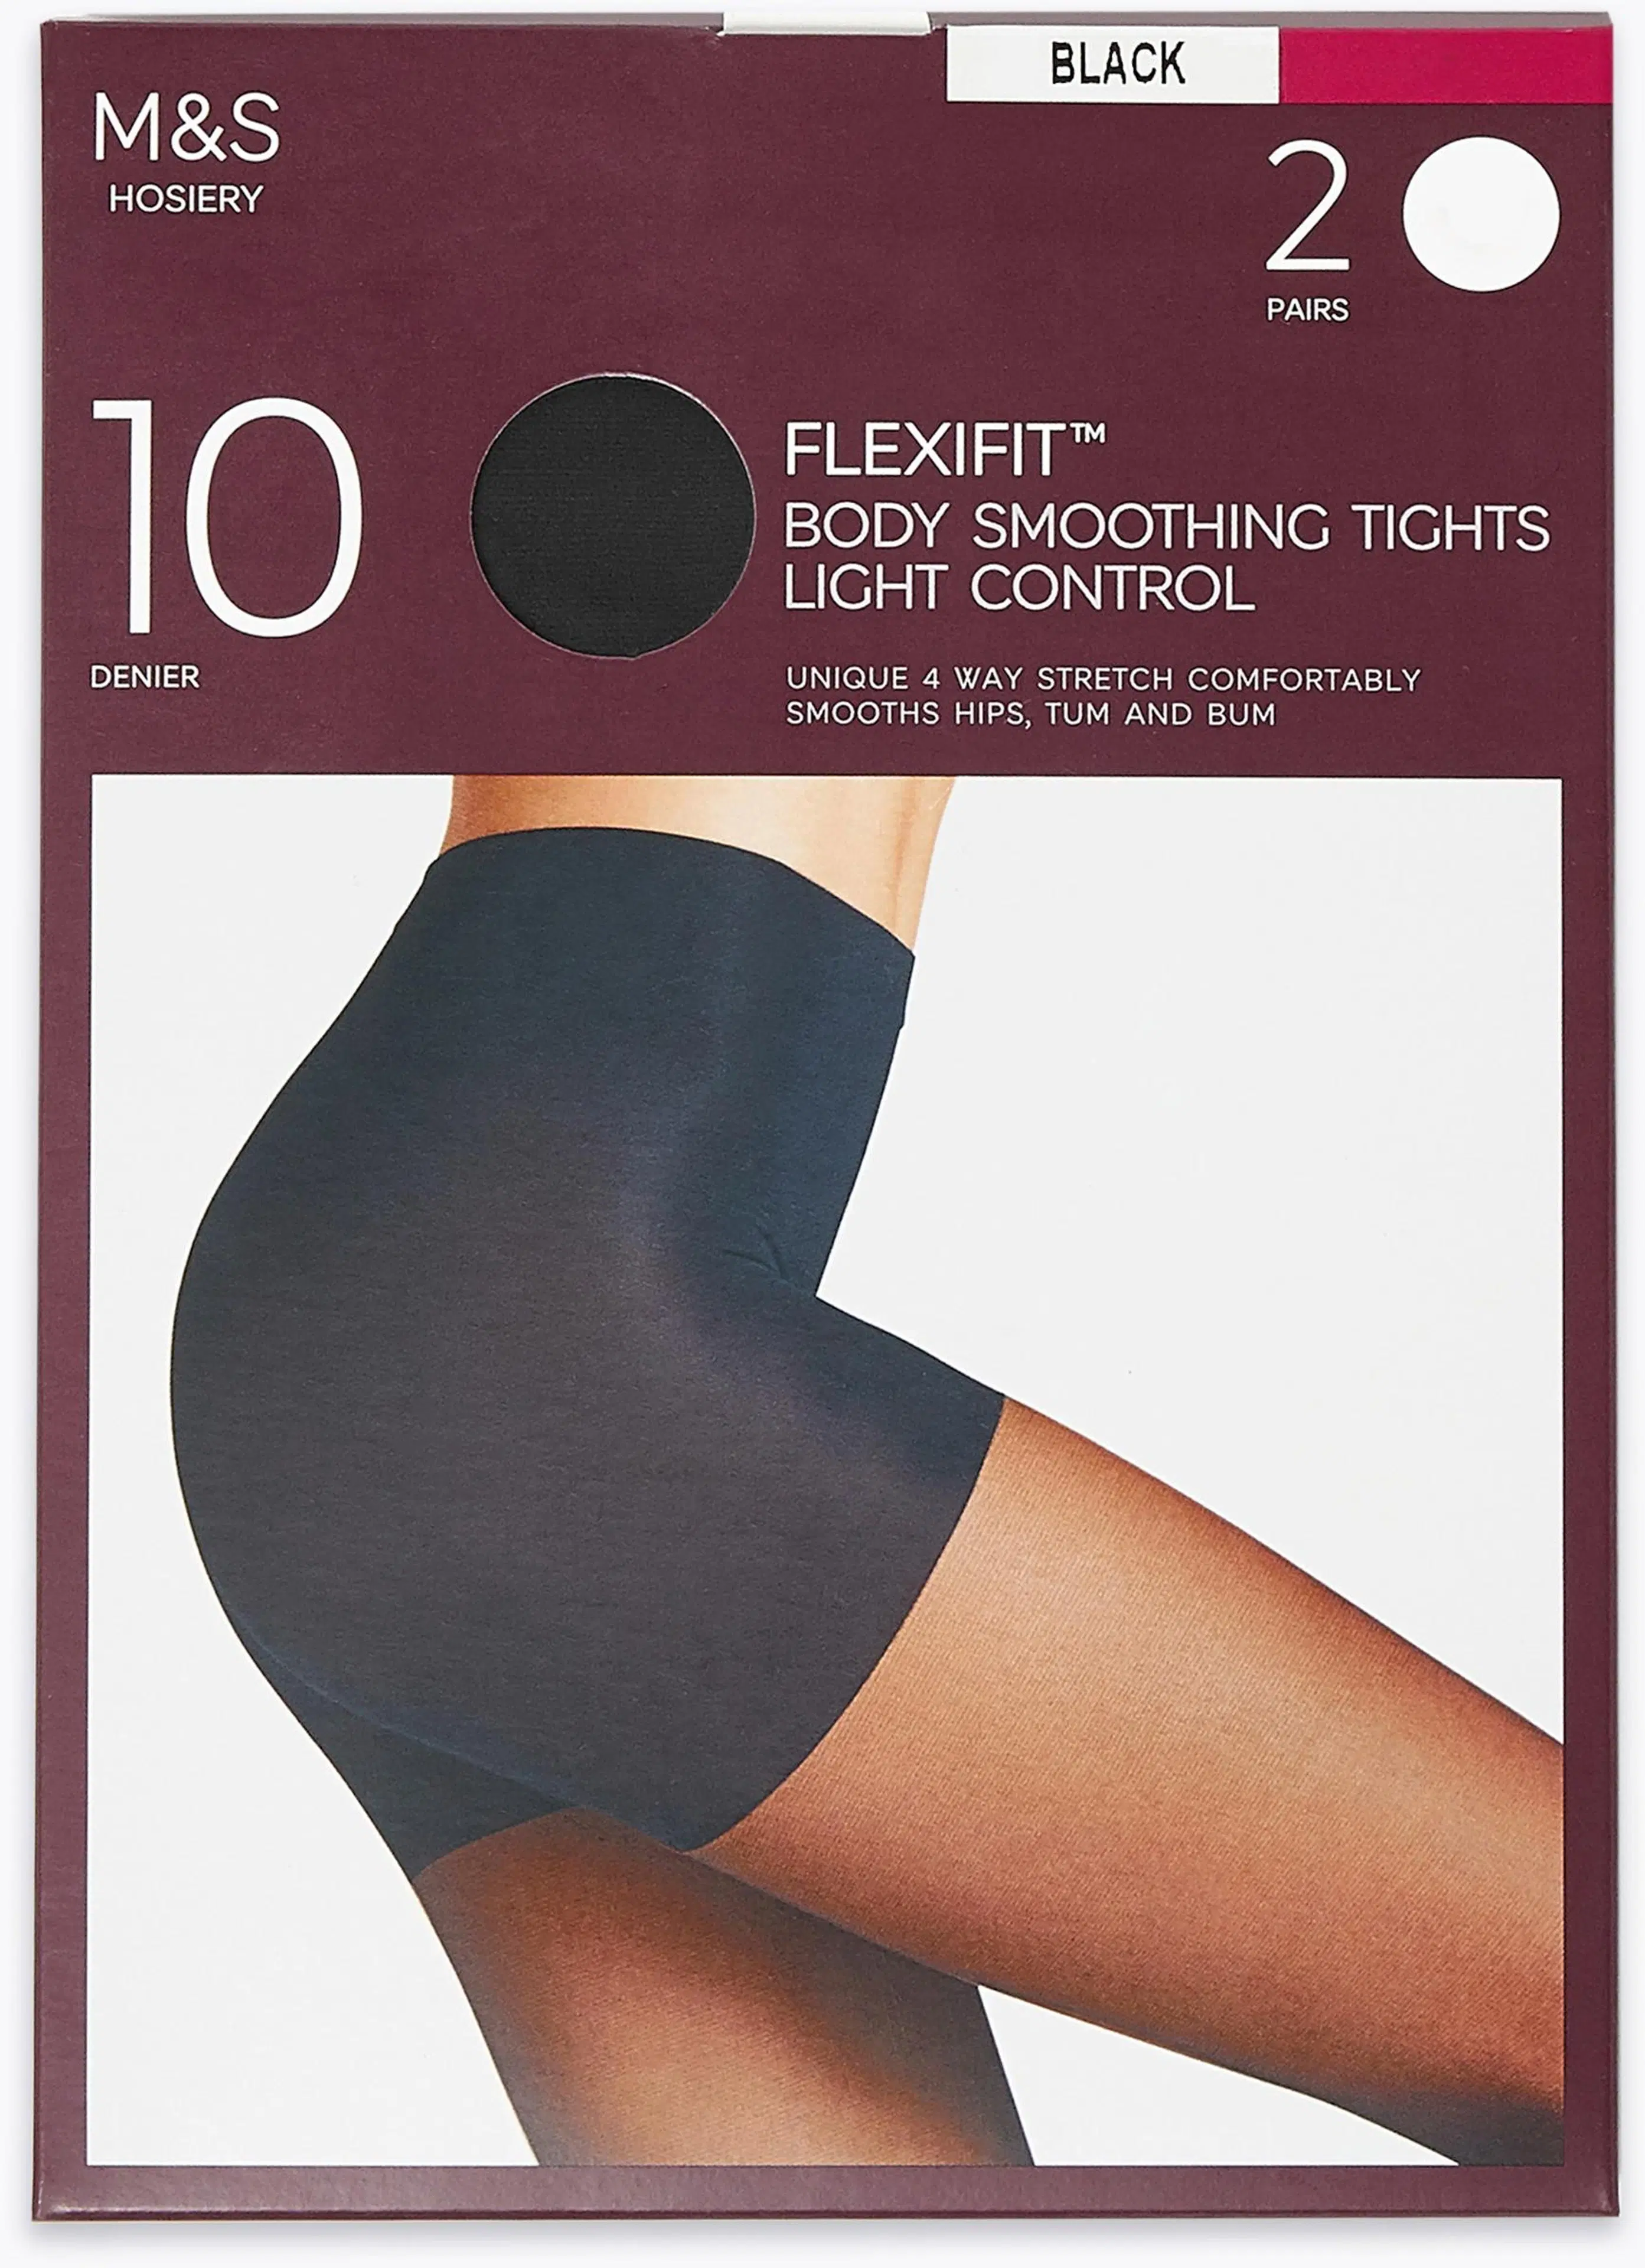 M&S Flexifit 10 DEN sukkahousut 2-pack